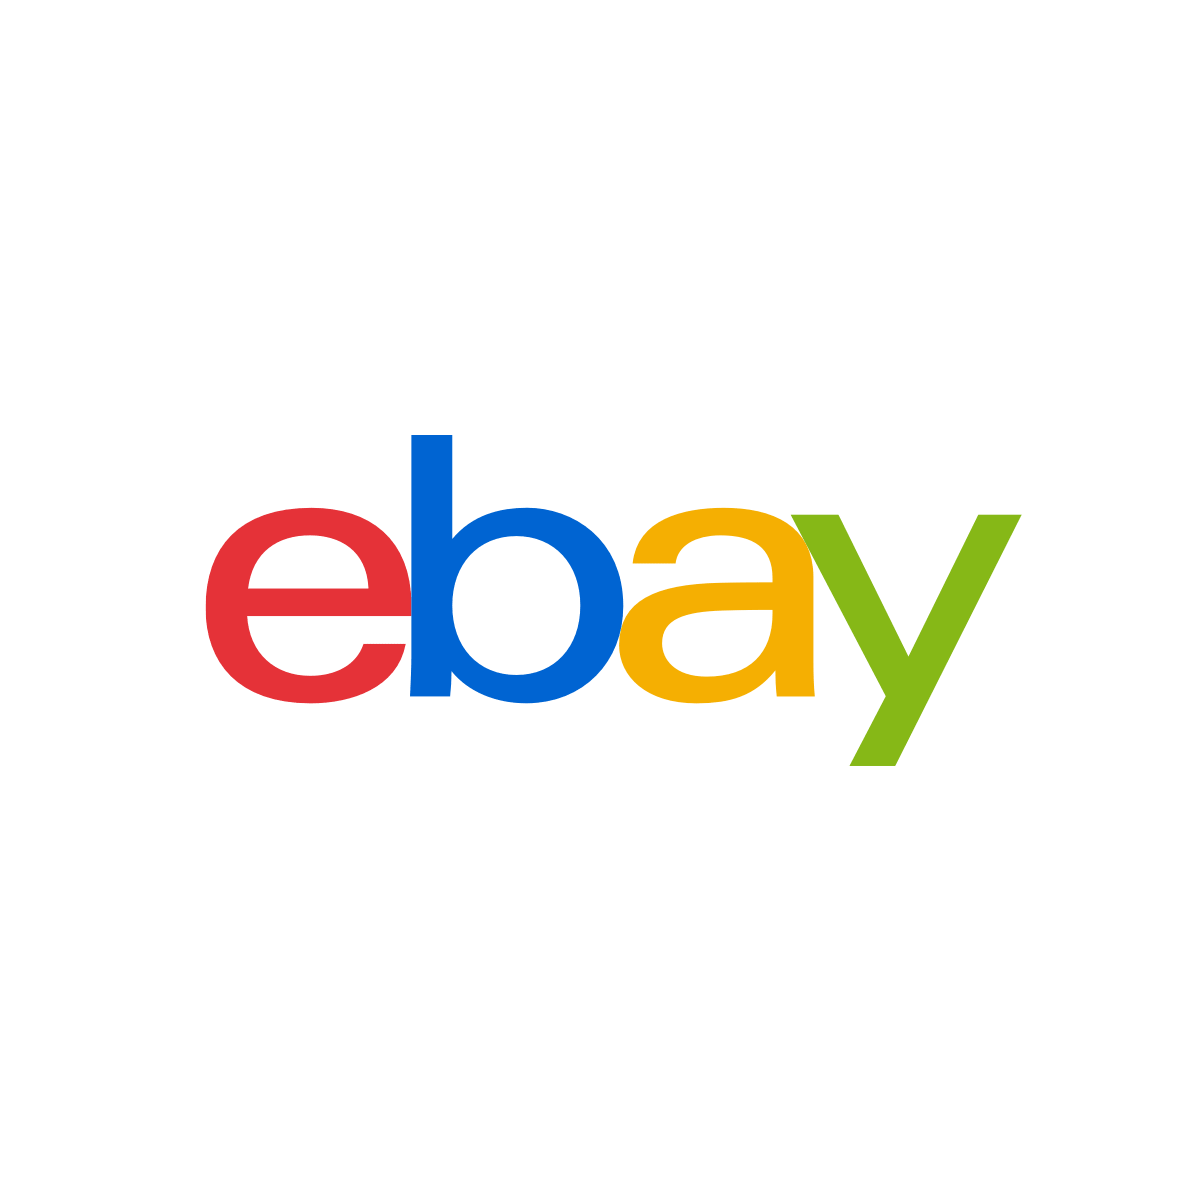 ebay proxies